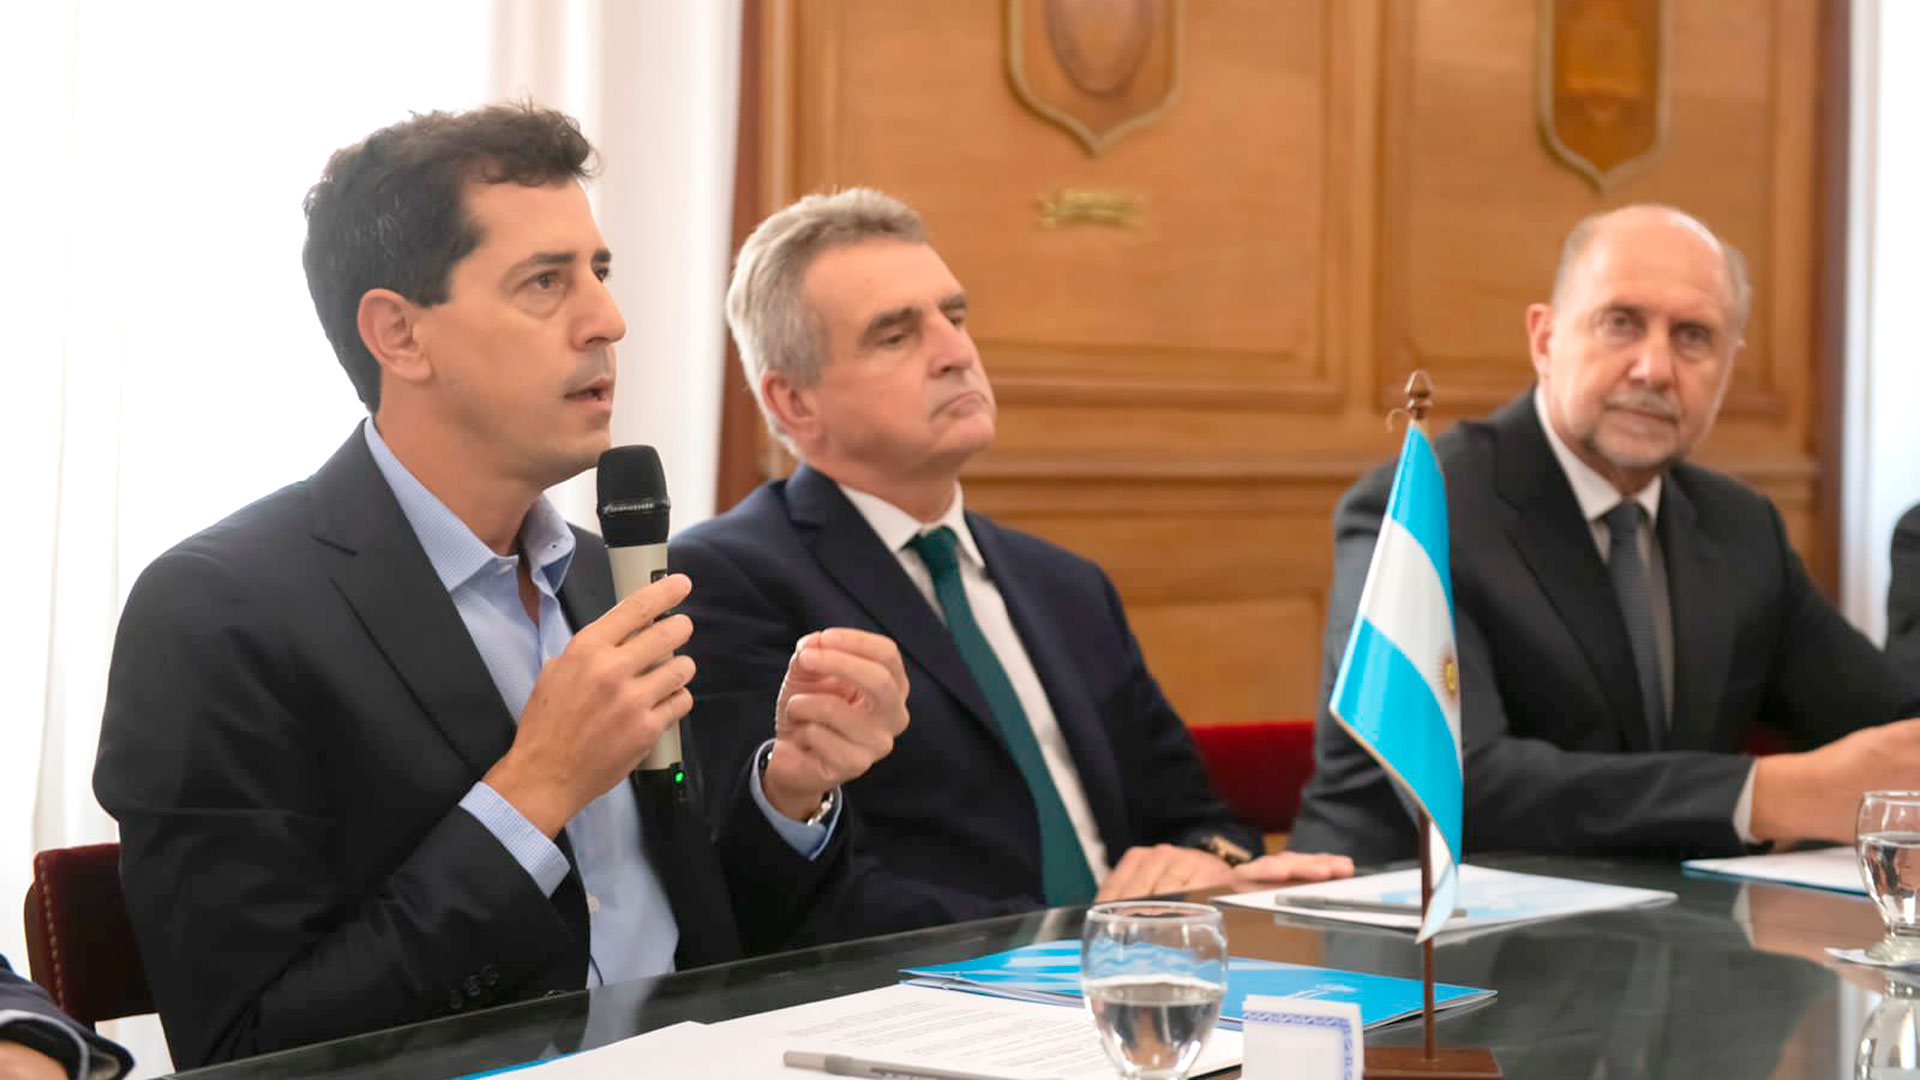 Con “Wado” De Pedro en campaña y la dupla Scioli-Rossi defendiendo las PASO, en el FdT se embarra la discusión sobre las candidaturas